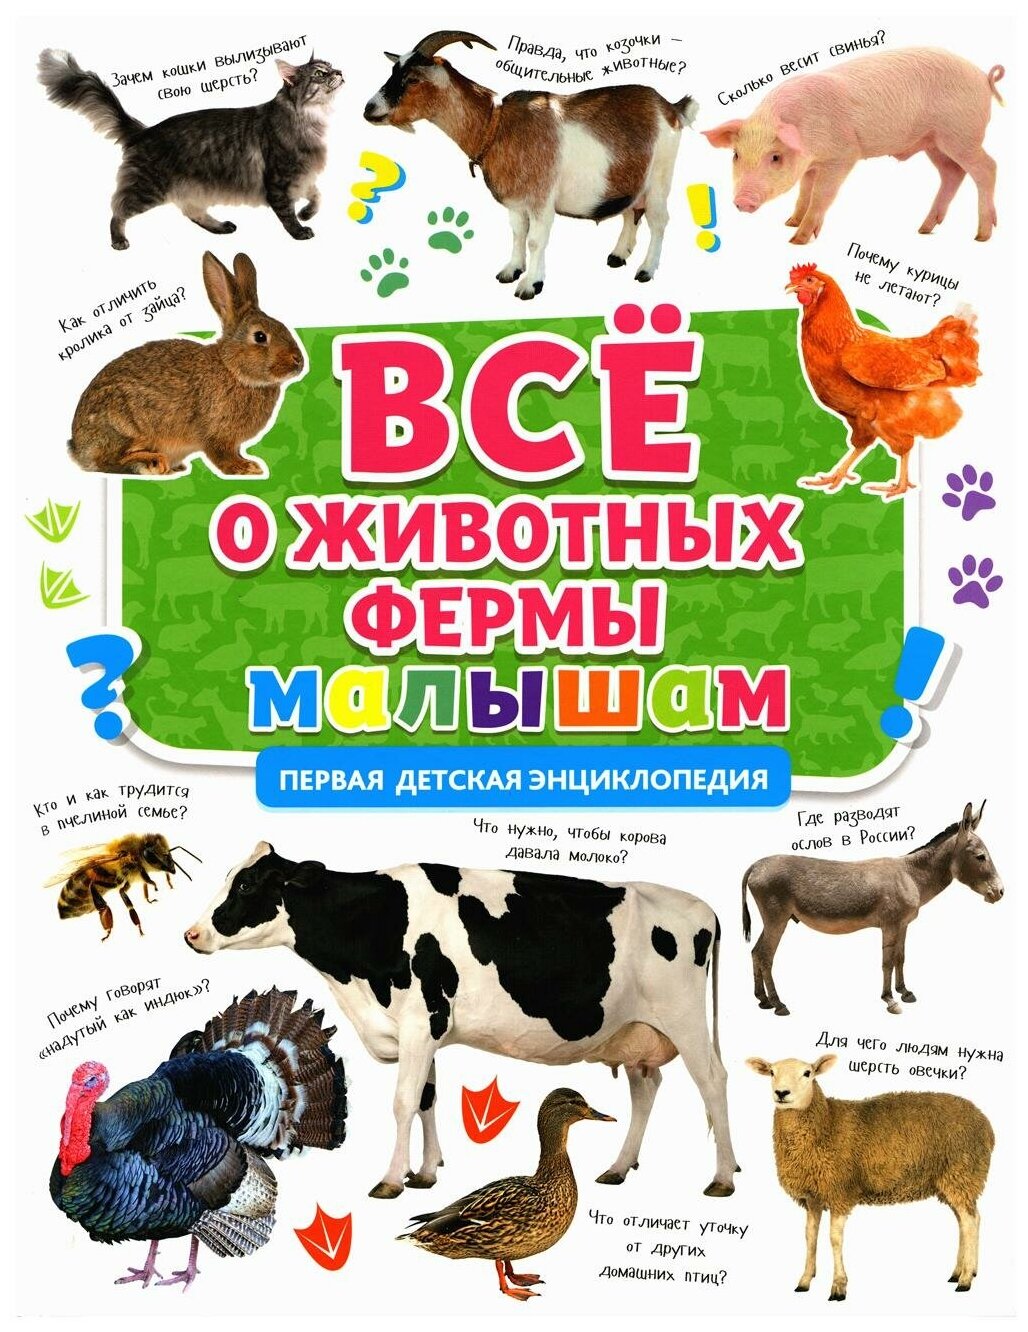 Всё о животных фермы малышам (Ершова М. (ред.)) - фото №1